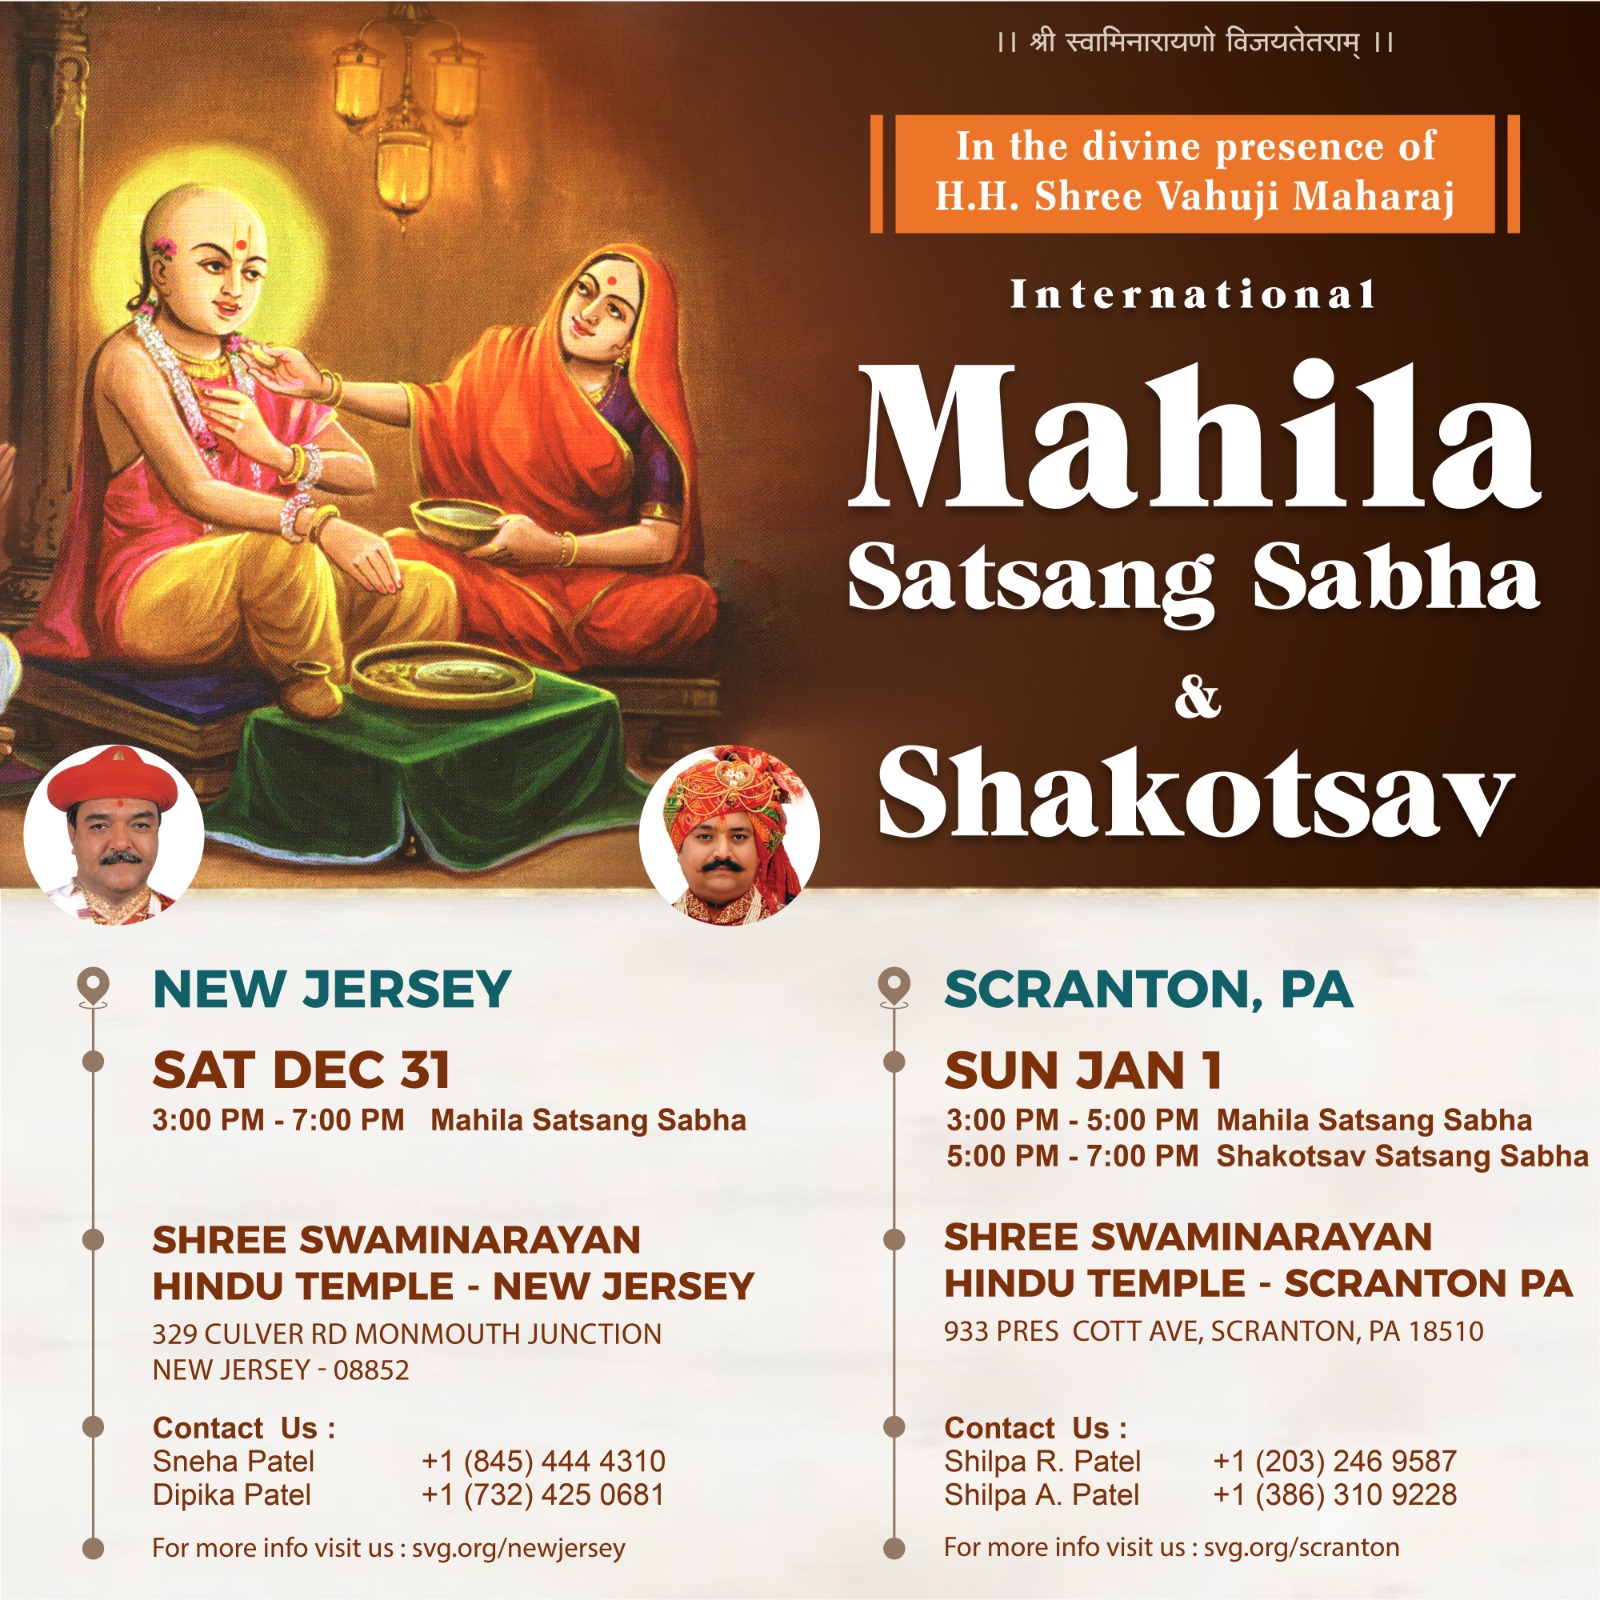 International Mahila Satsang Sabha Shakotsav 2022